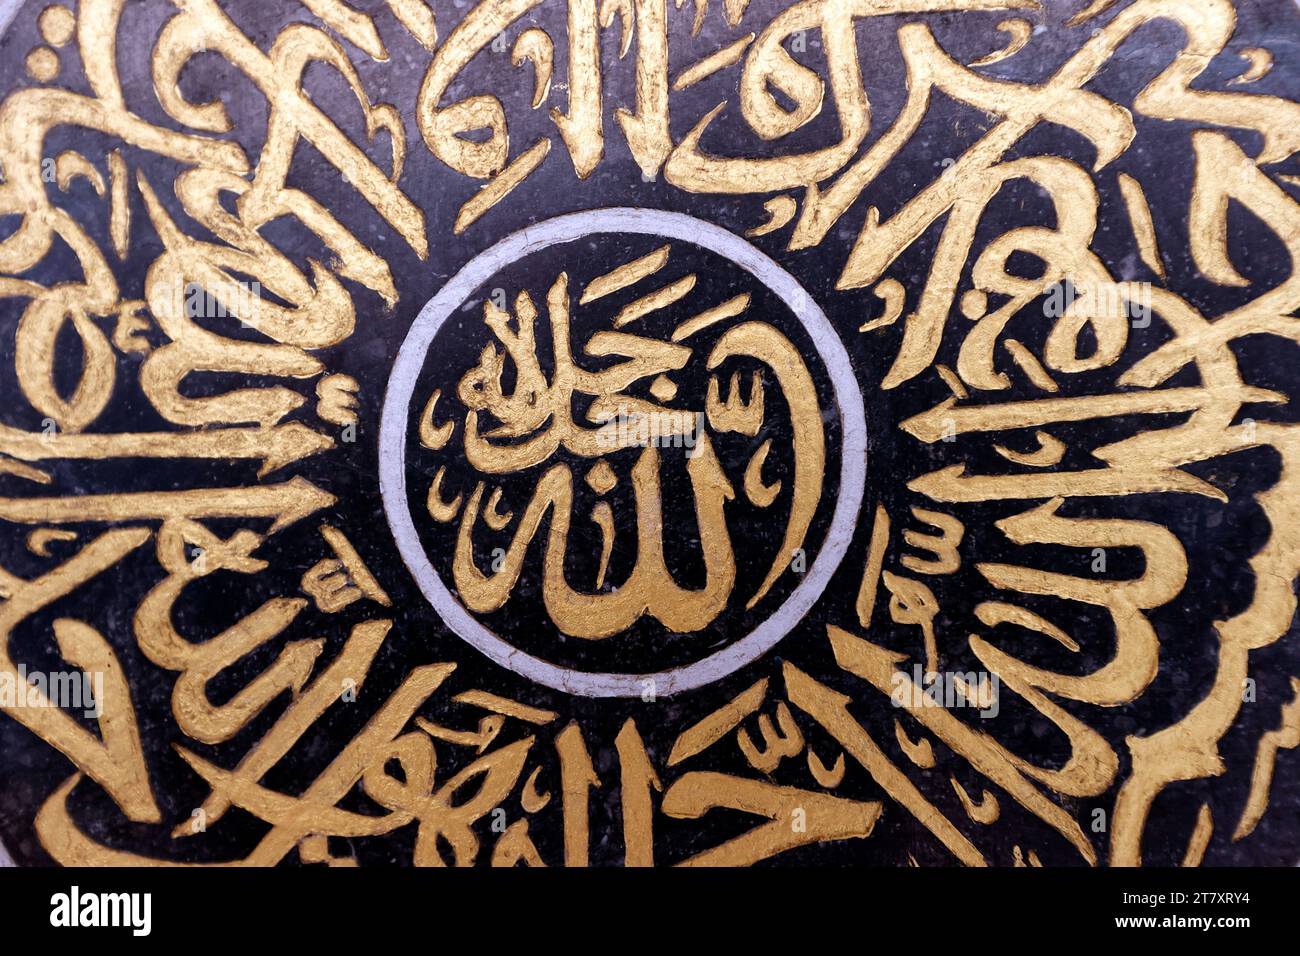 Décoration de mosquée, calligraphie arabe, Allah (Dieu) dans l'Islam, Masjid Mirasuddeen mosquée, Bangkok, Thaïlande, Asie du Sud-est, Asie Banque D'Images